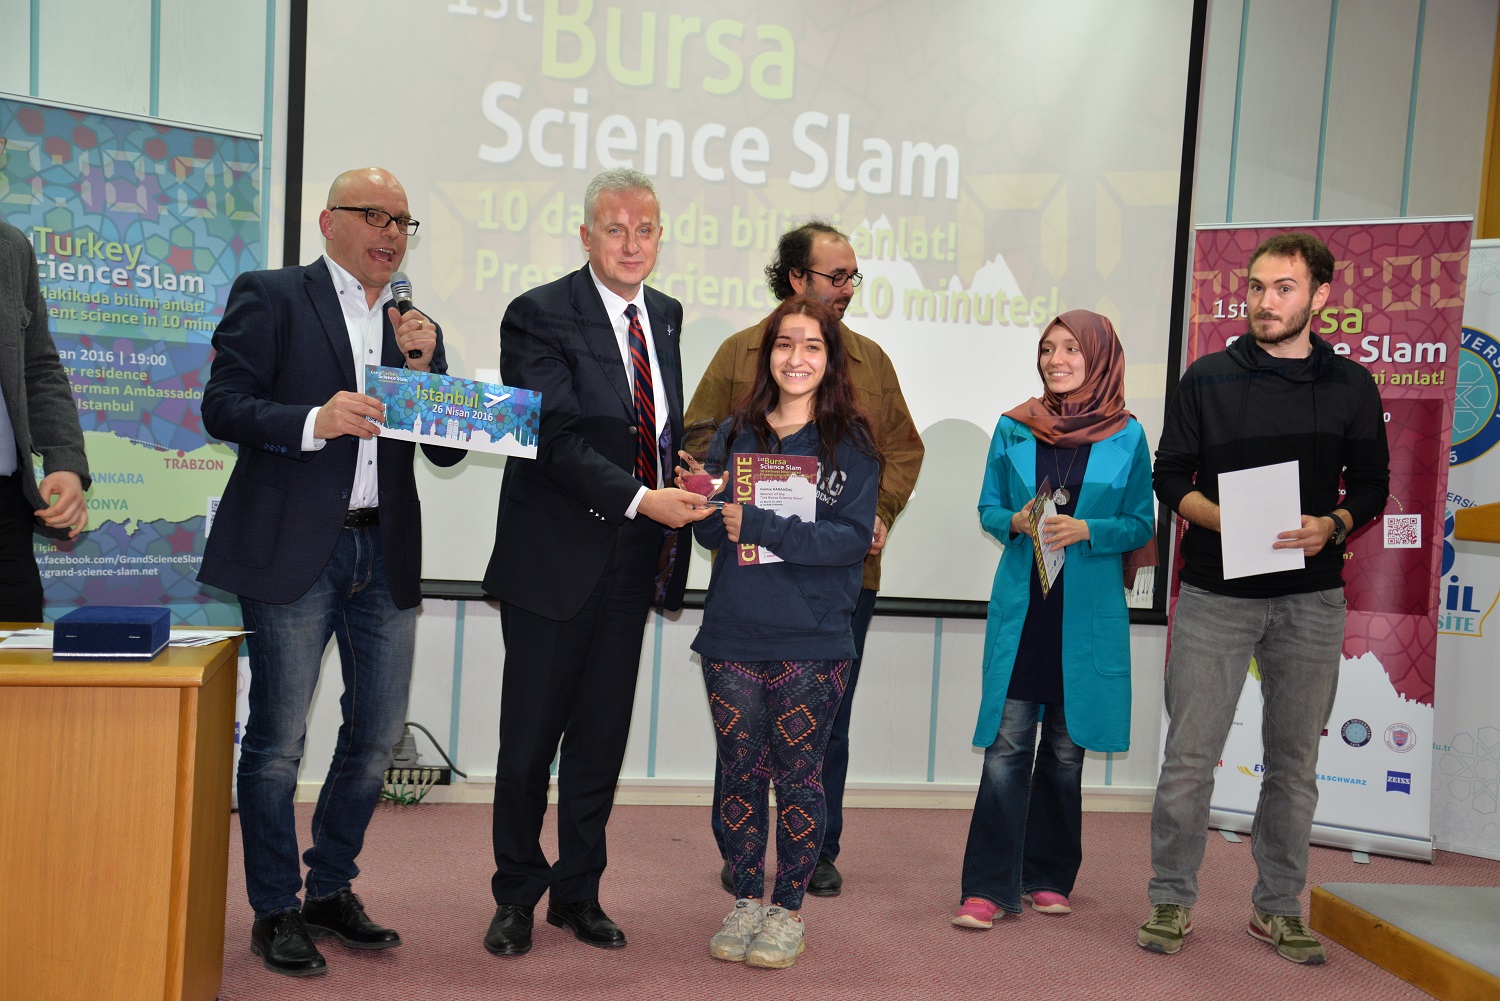 Uludağ Üniversitesi, Bursa Science Slam’e ev sahipliği yaptı